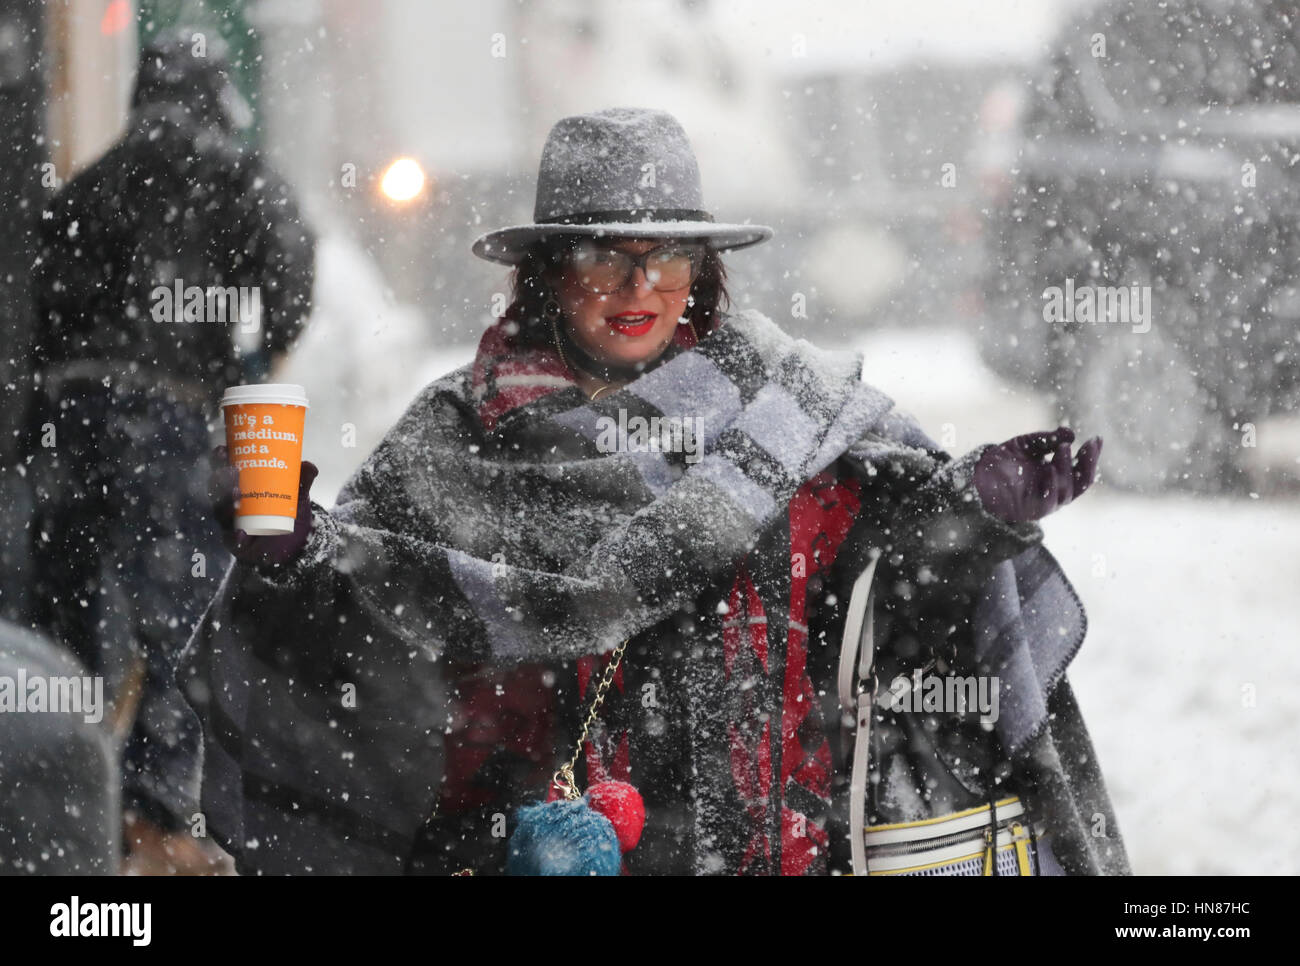 New York, USA. Feb 9, 2017. Une femme marche dans la neige à New York, États-Unis, le 9 février 2017. Une puissante tempête a apporté beaucoup de neige et des vents pour le nord-est des États-Unis le jeudi, la création de conditions routières dangereuses et en laissant les écoles et les entreprises fermées. Credit : Wang Ying/Xinhua/Alamy Live News Banque D'Images